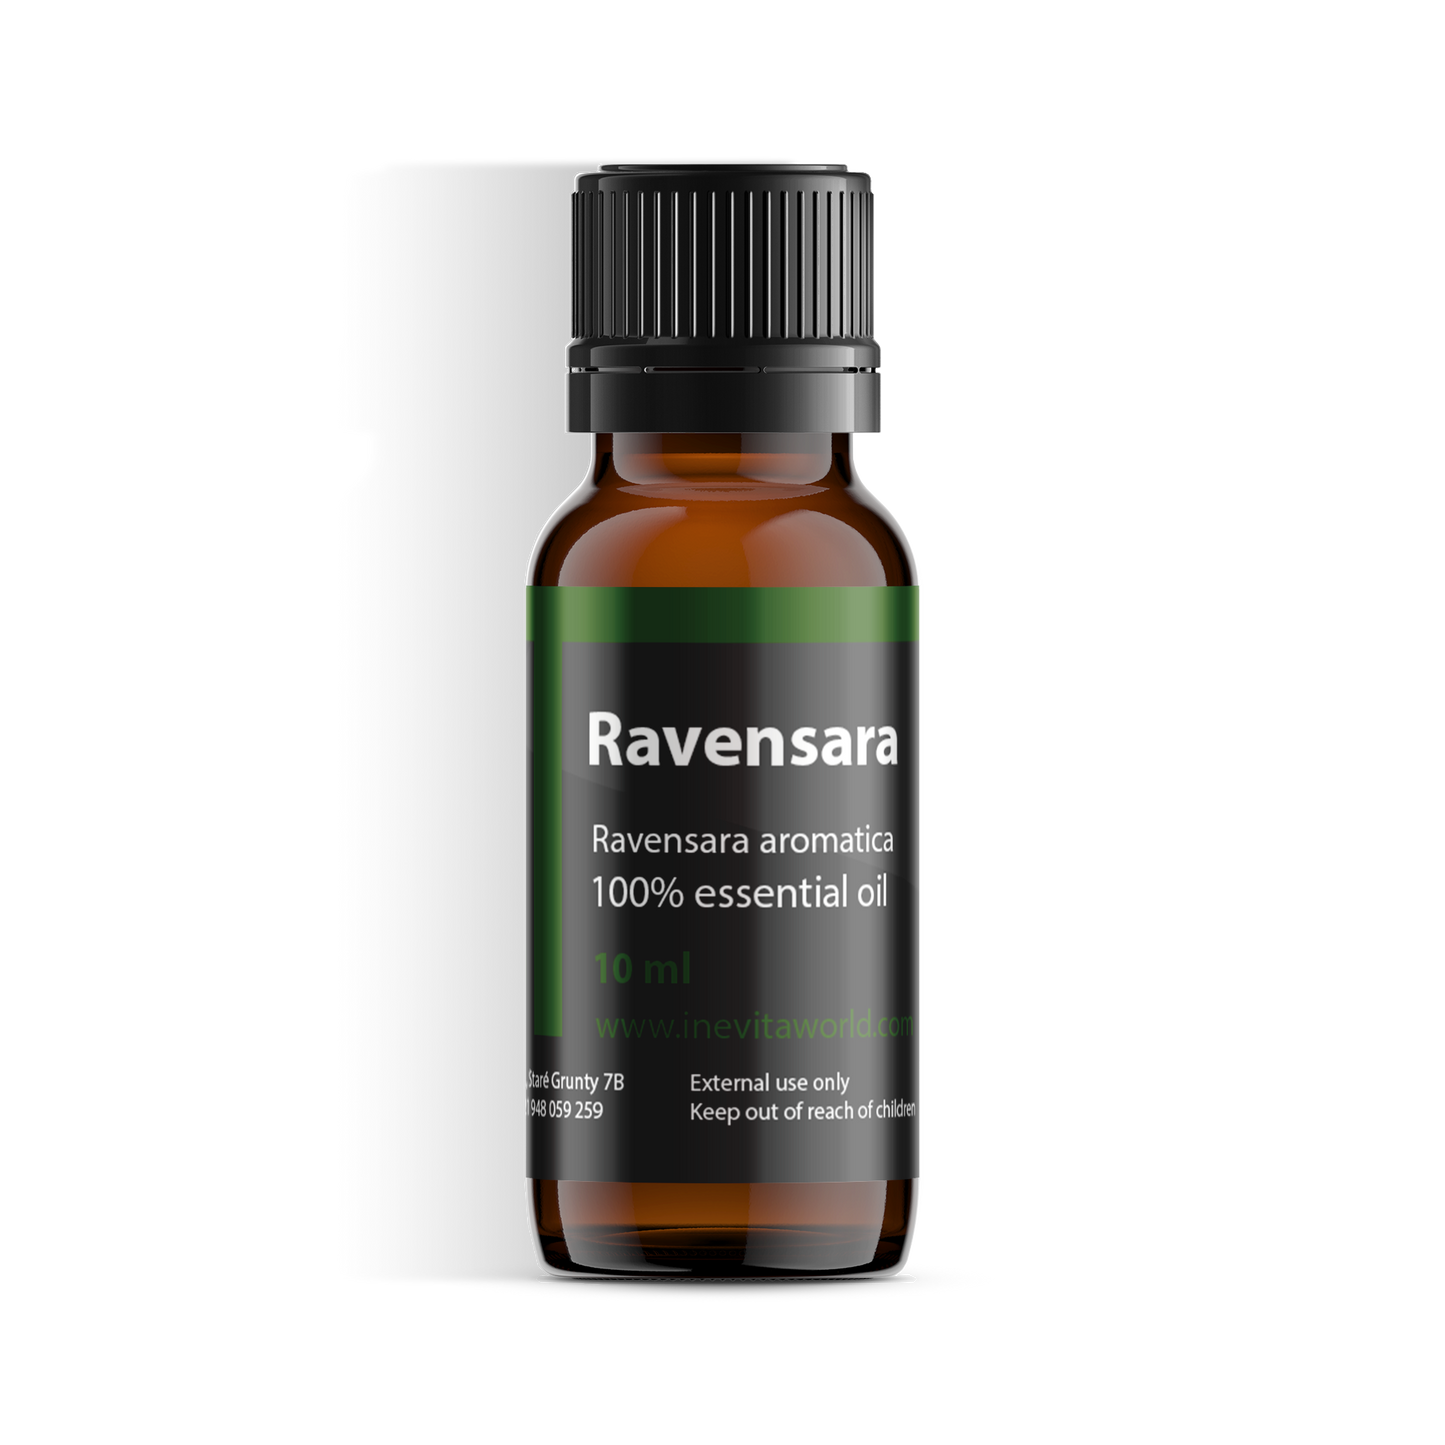 Ravensara